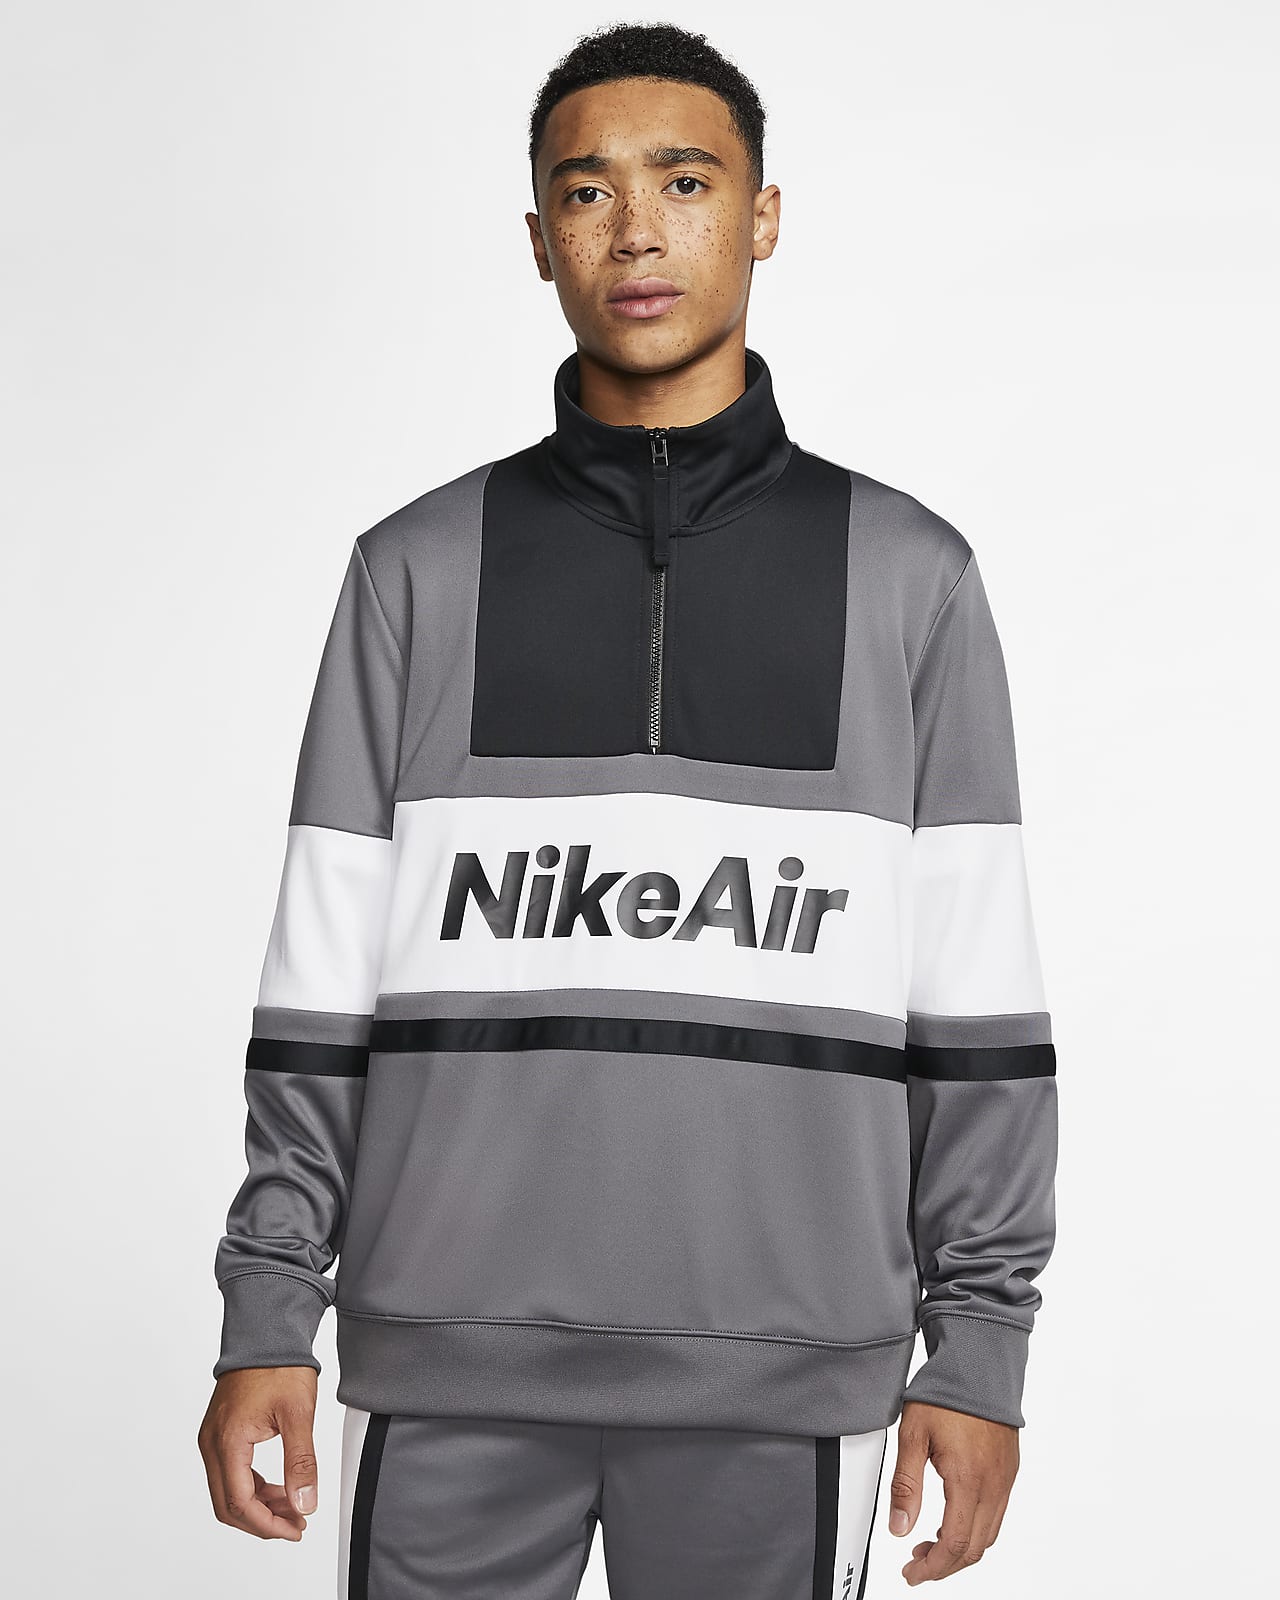 Nike Air Men's Jacket. Nike BE